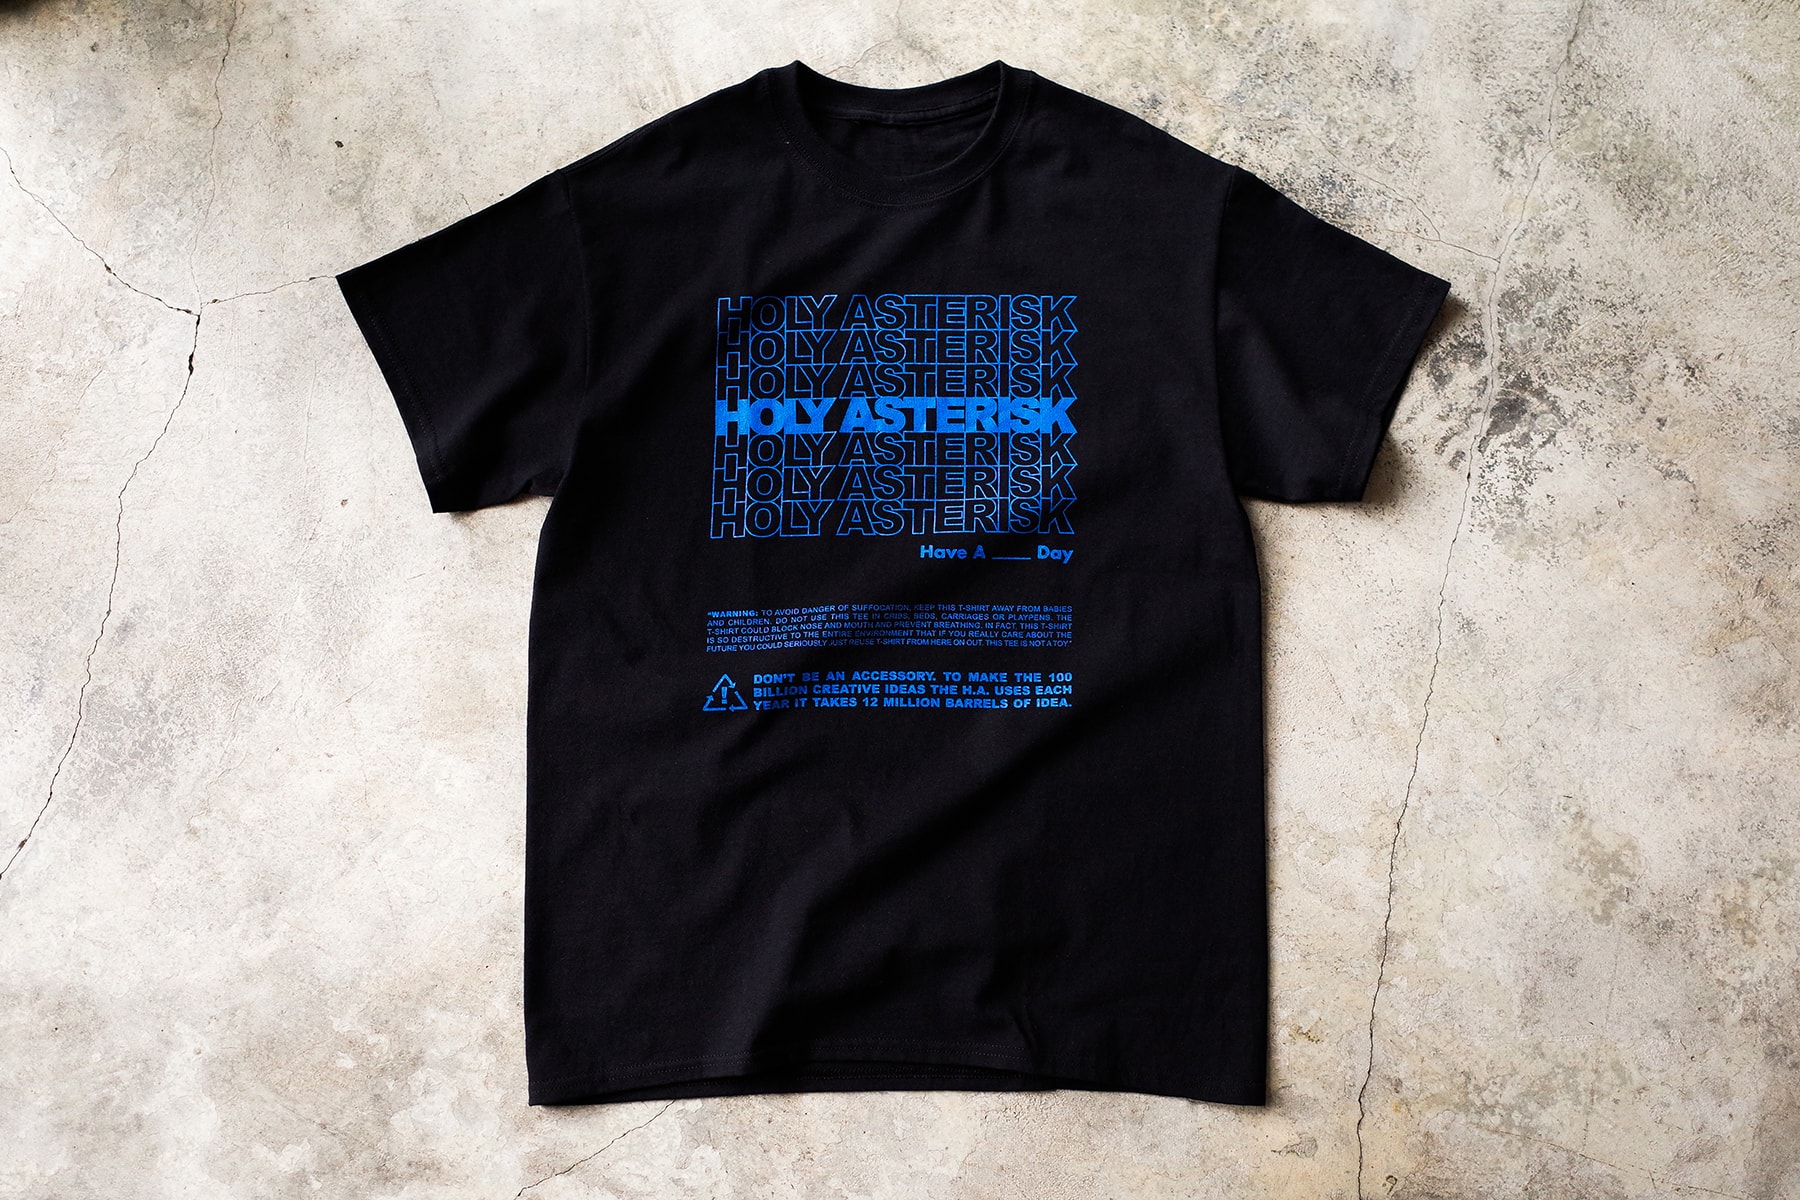 上環流行文化店 Asterisk x Holymountain Co. 全新聯名企劃「HOLYASTERISK」